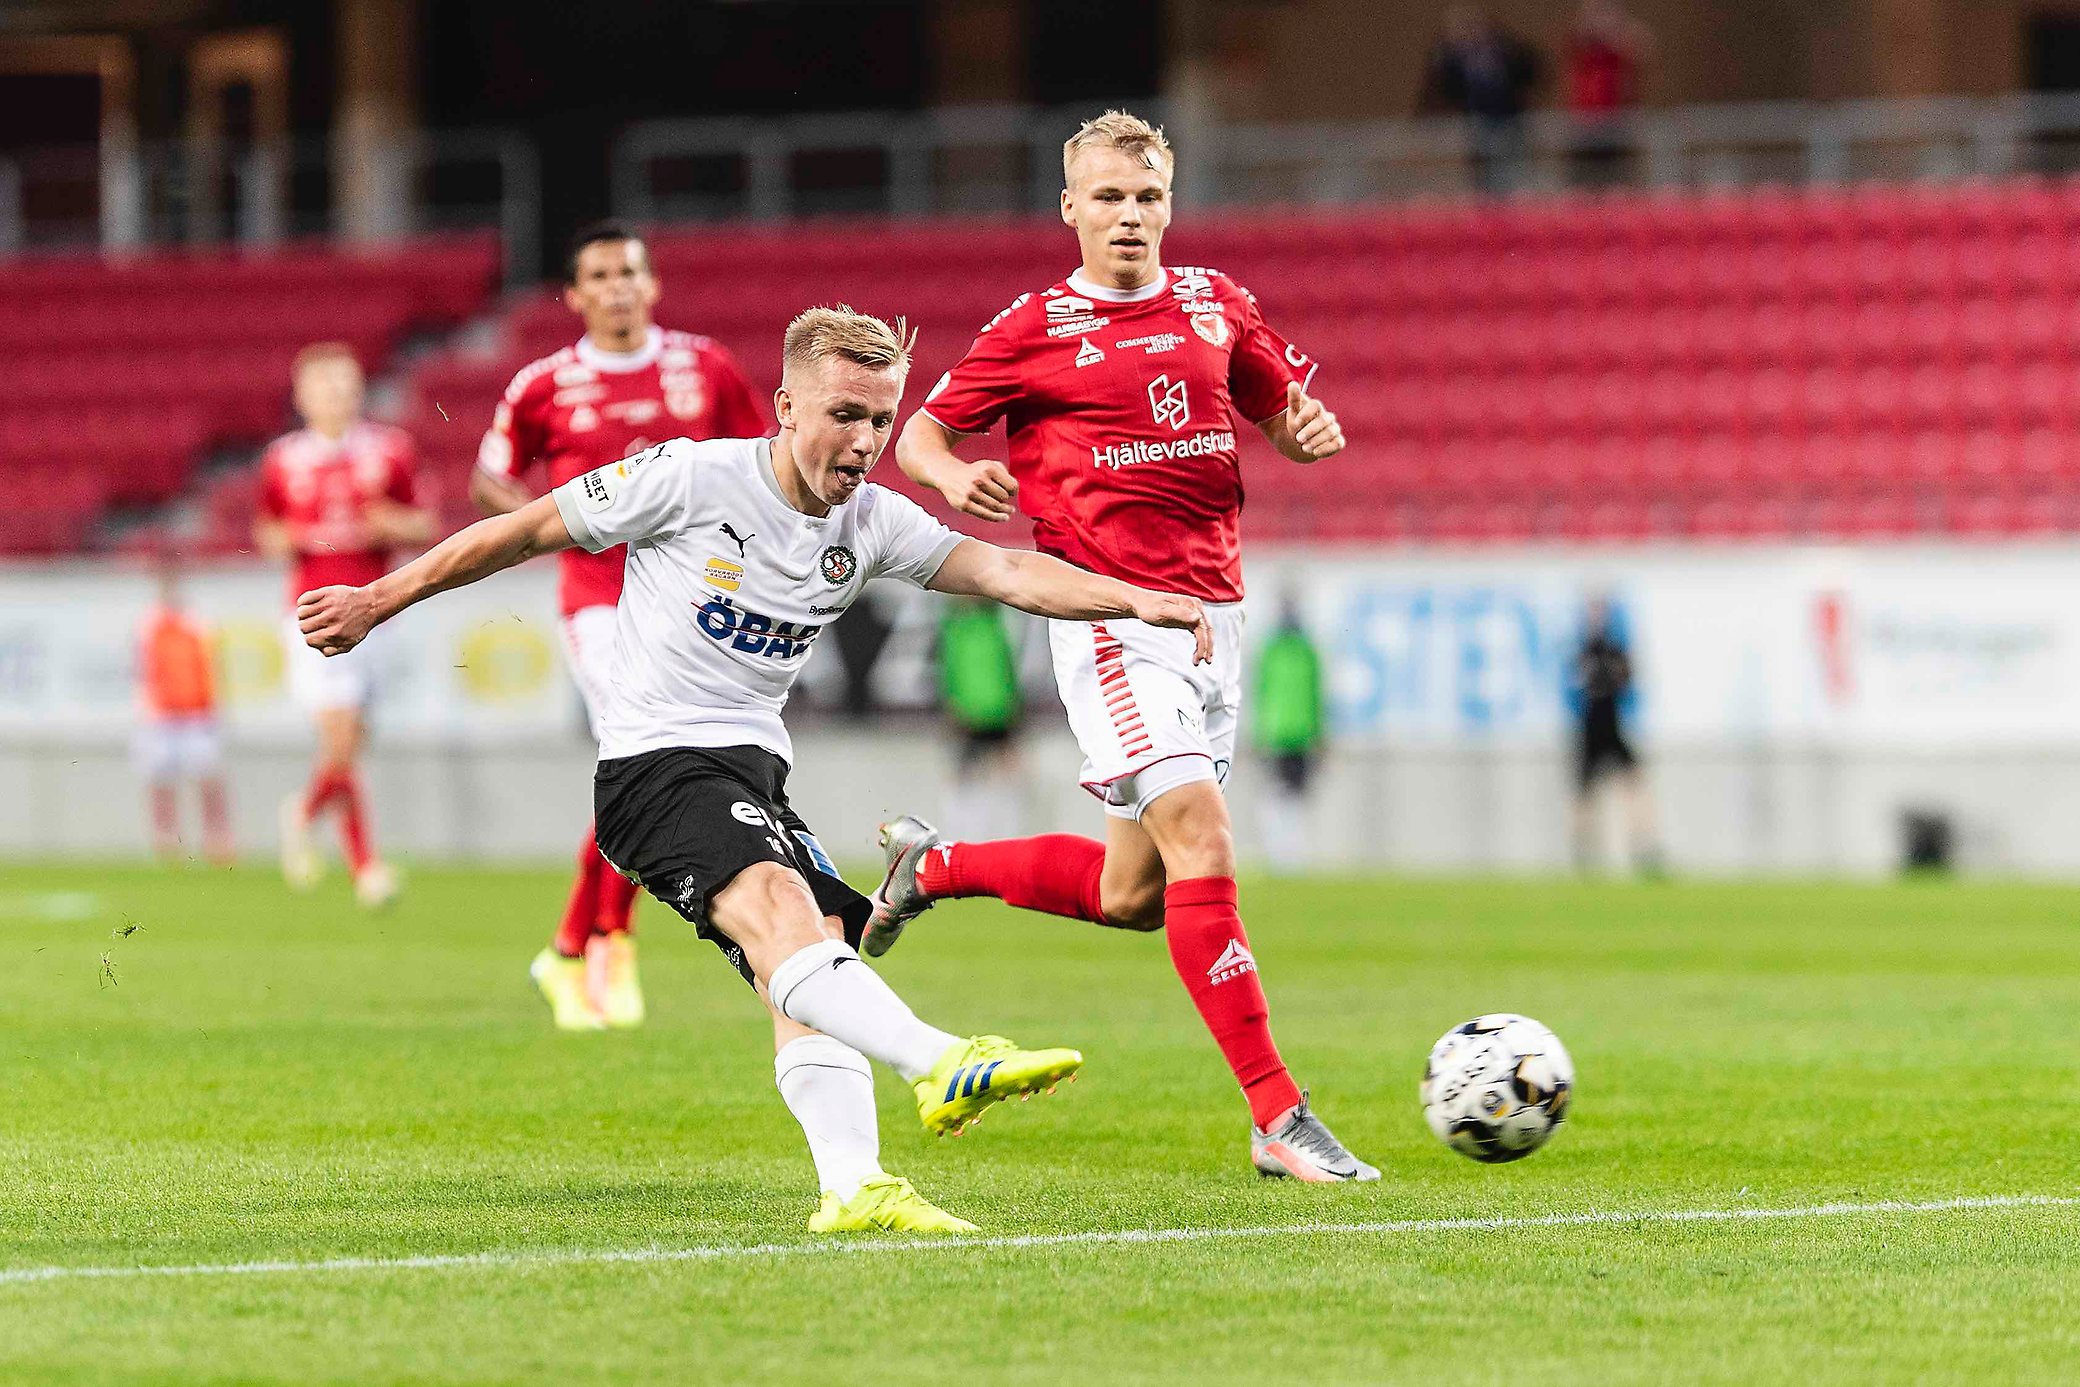 Motståndarkollen: Kalmar FF | ÖSK Fotboll